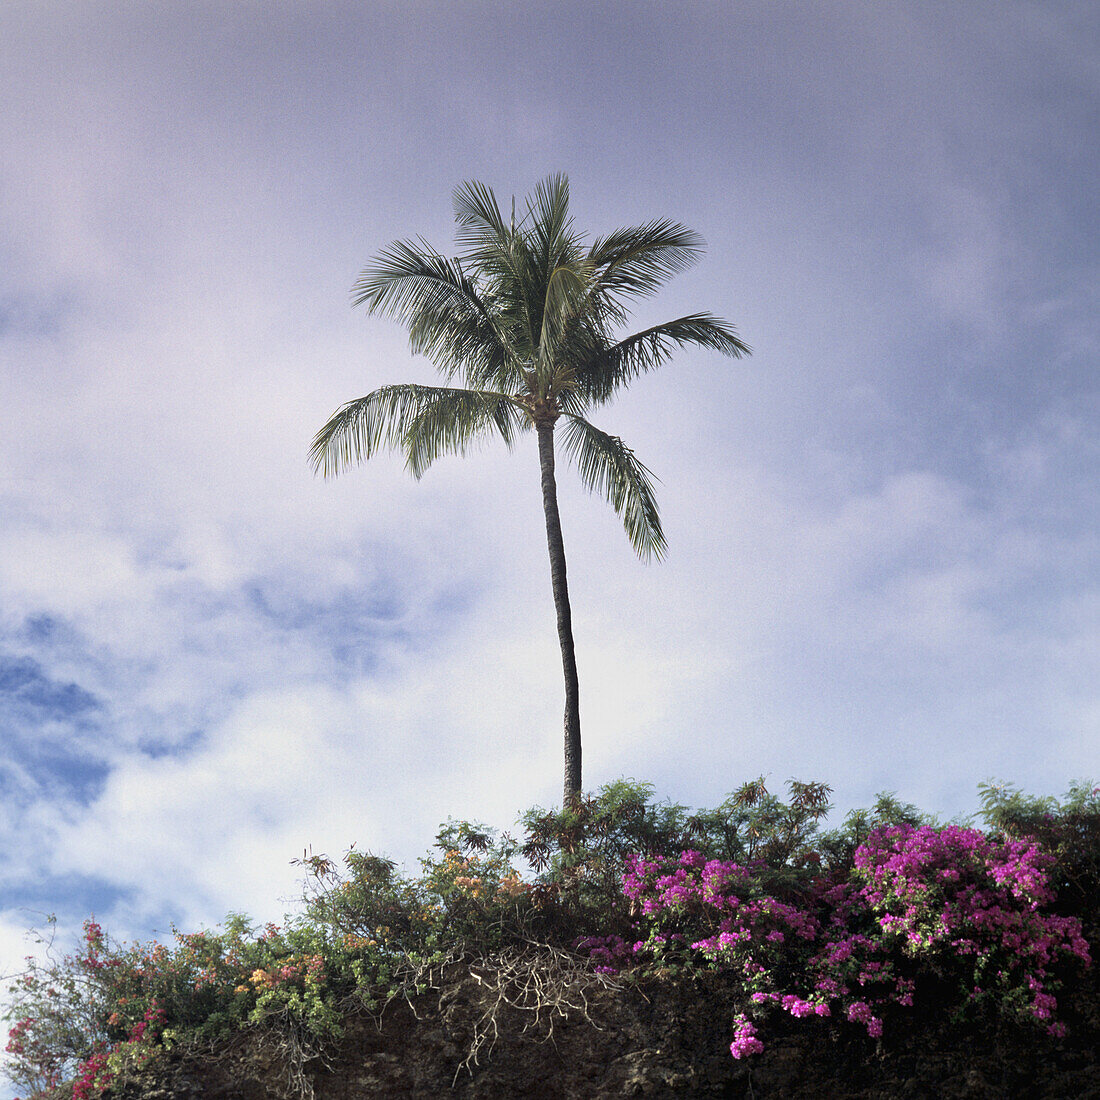 A palm tree and lush foliage, Maui, Hawaii